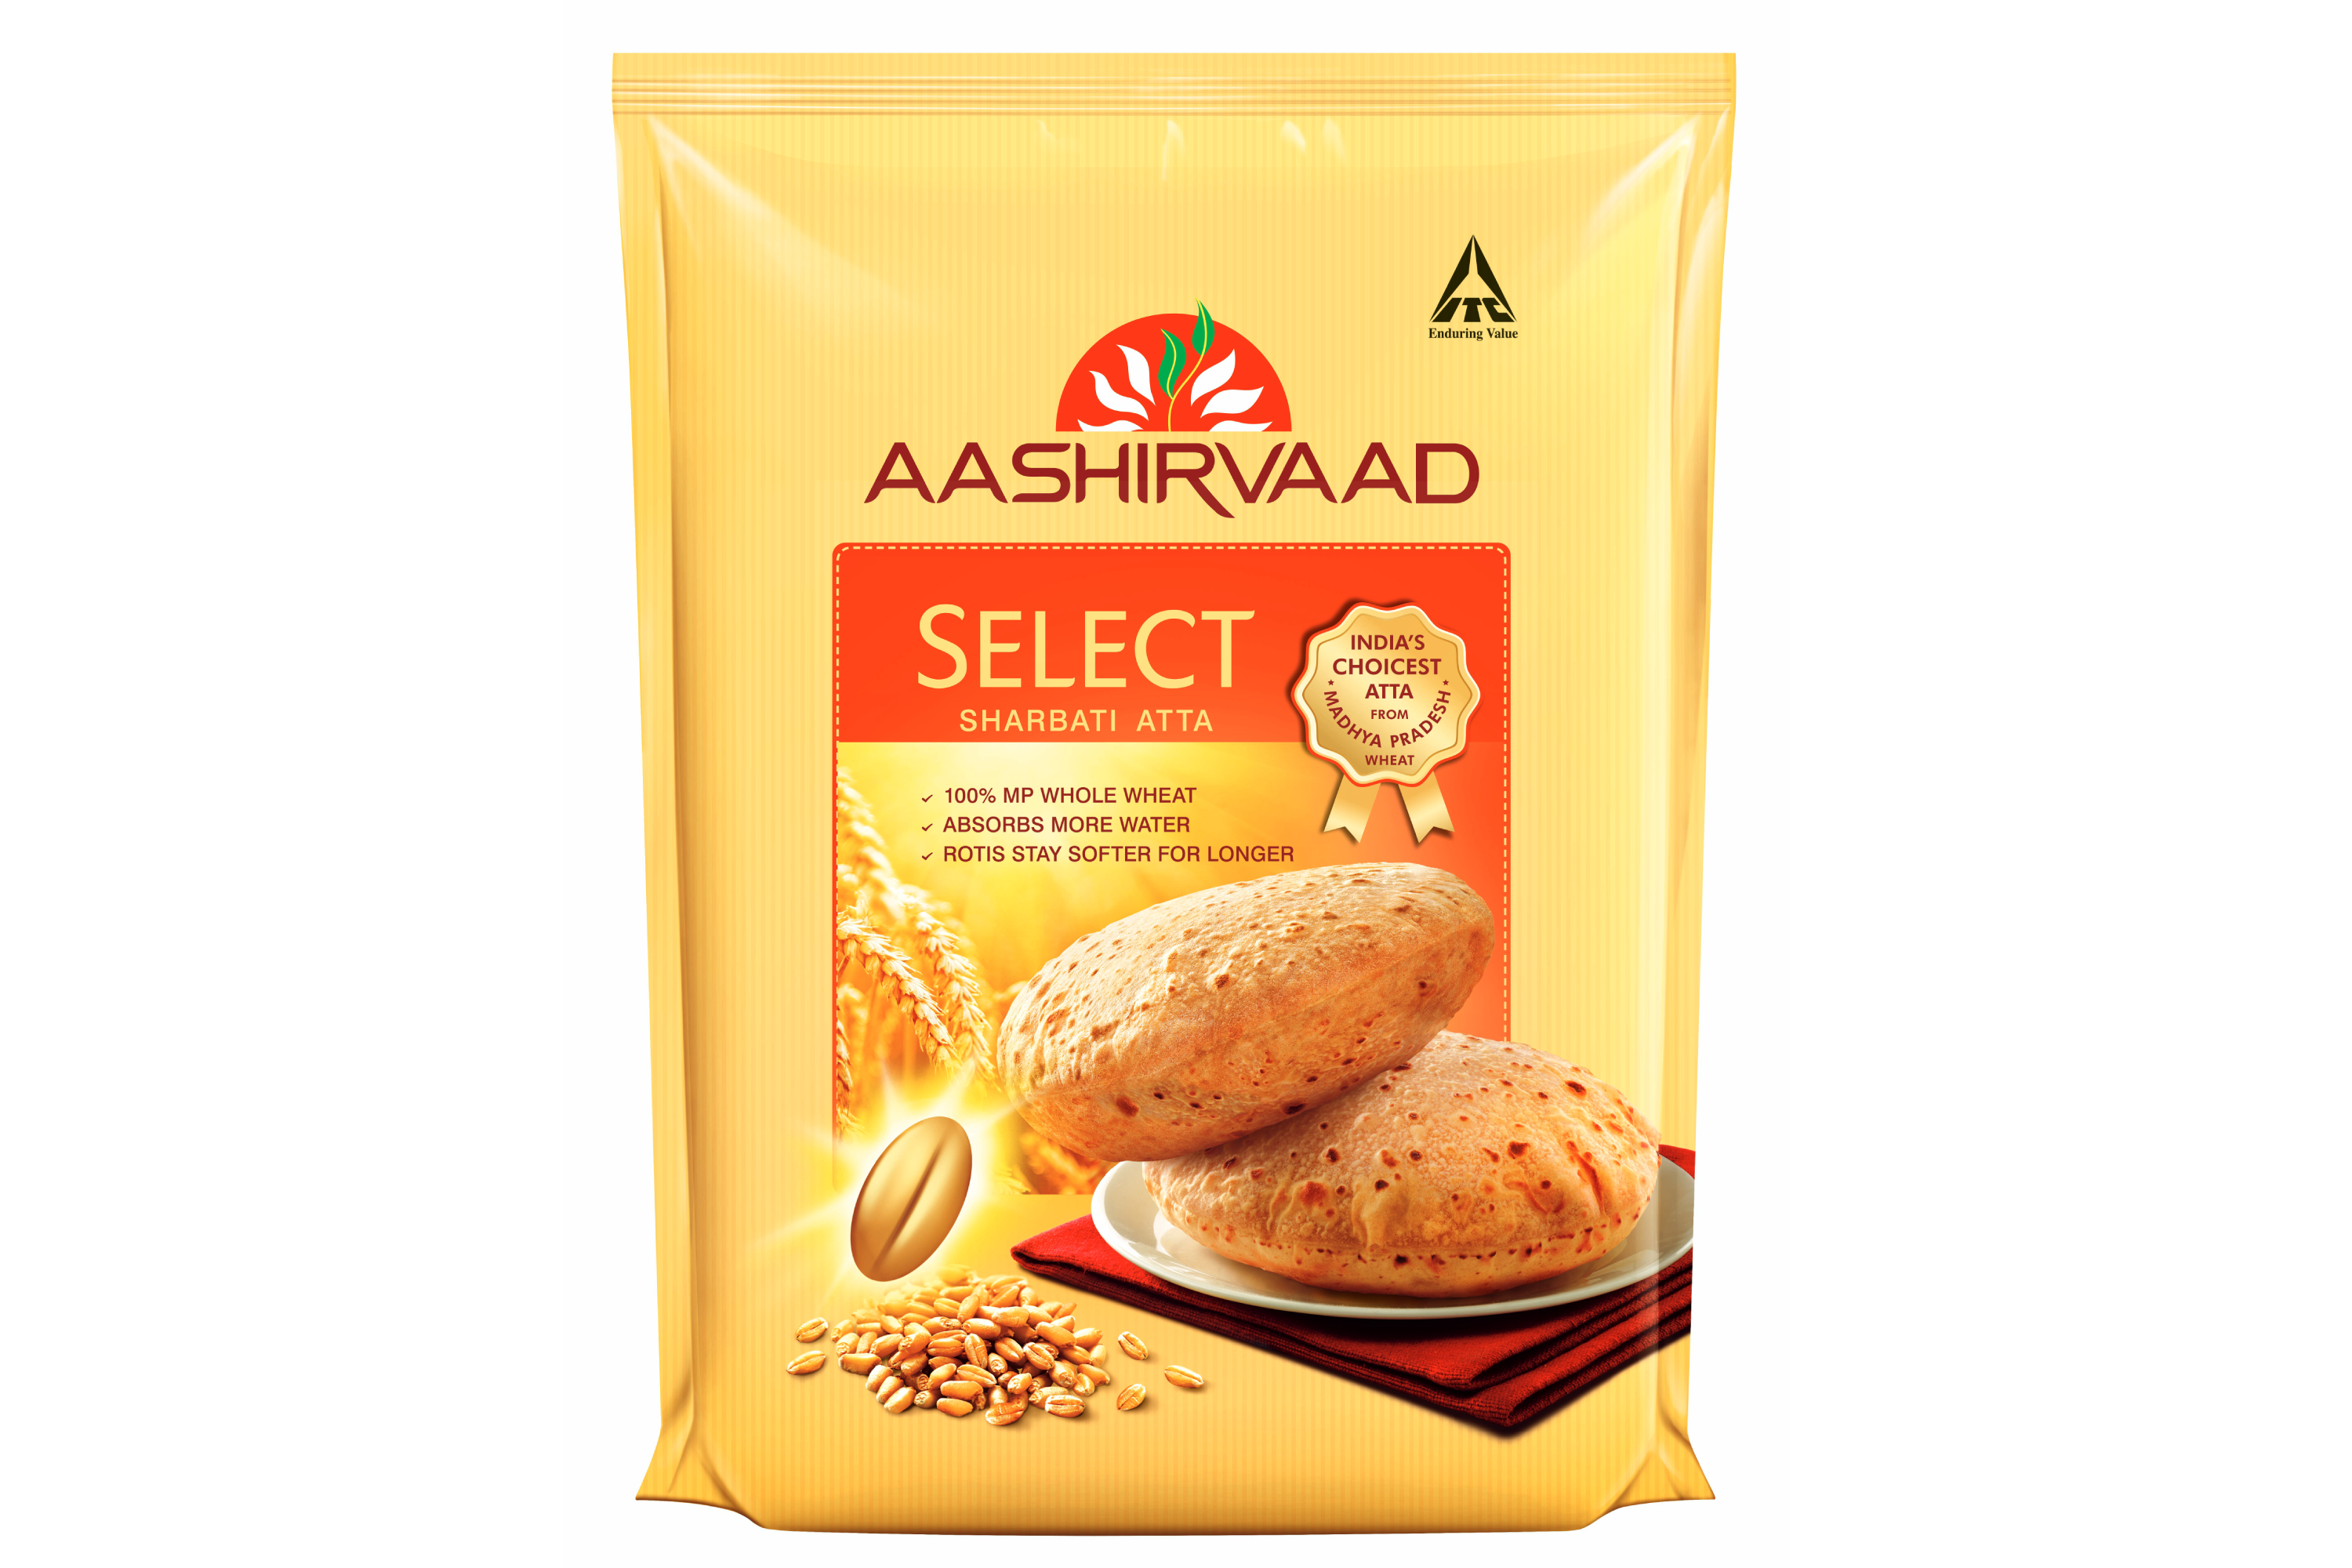 Aashirvaad Select Sharbati Whole Wheat Atta 5g